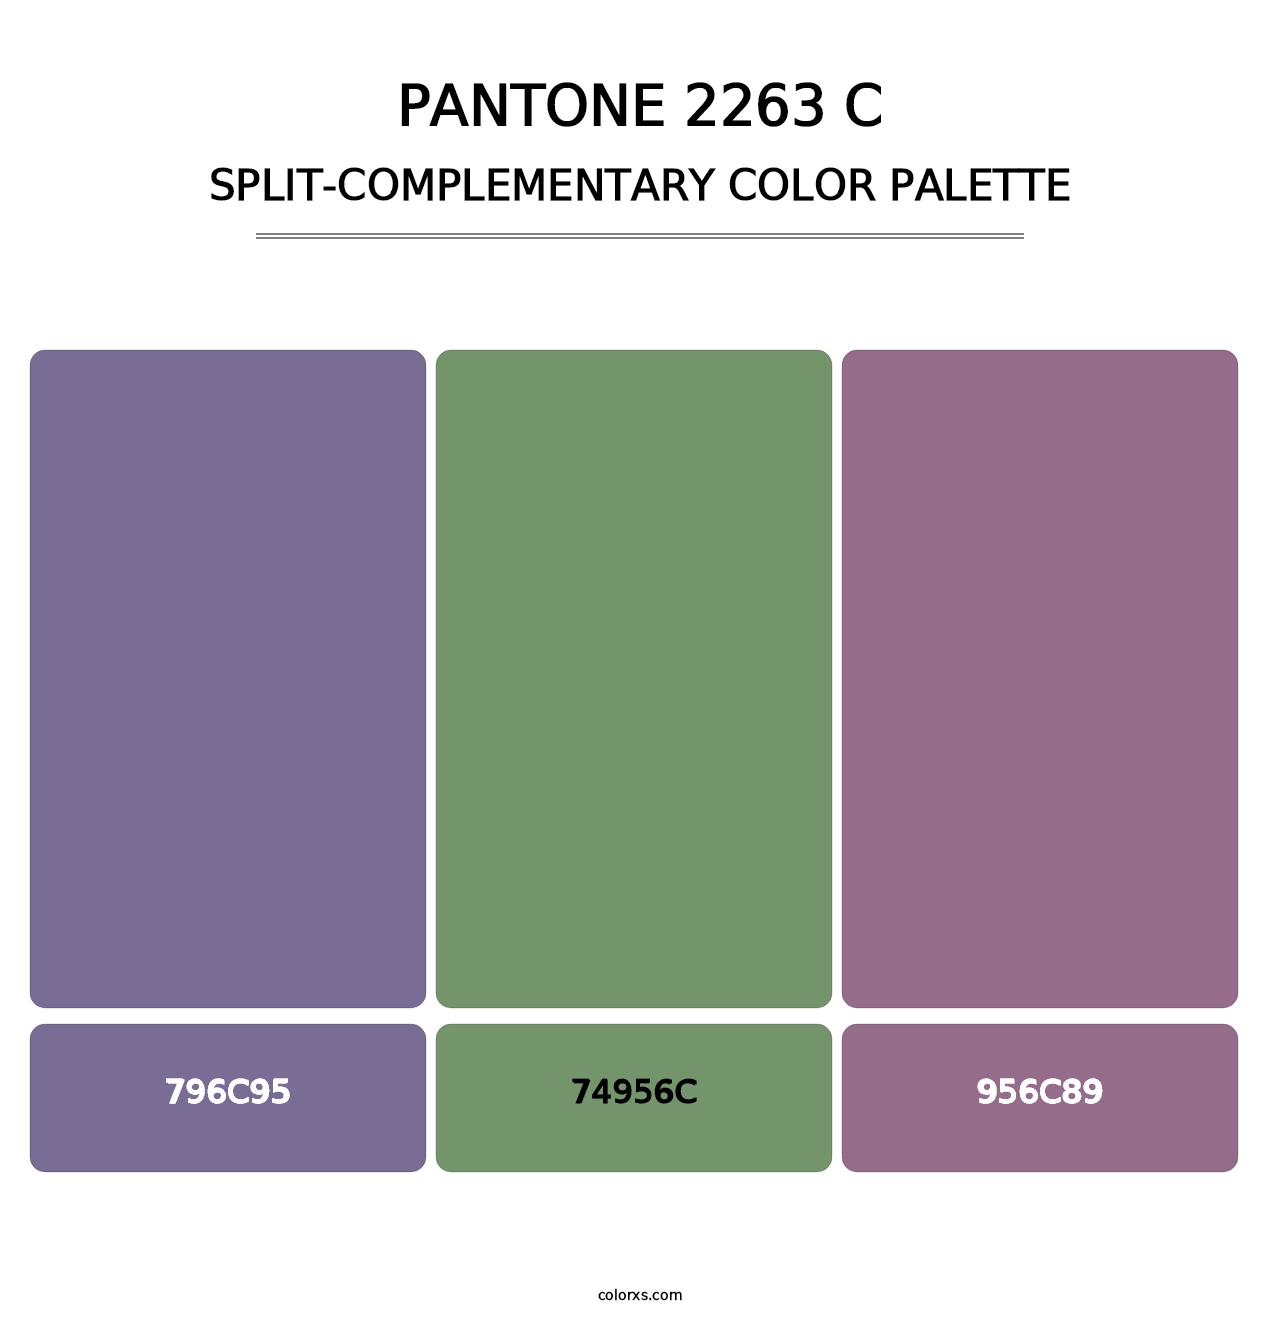 PANTONE 2263 C - Split-Complementary Color Palette